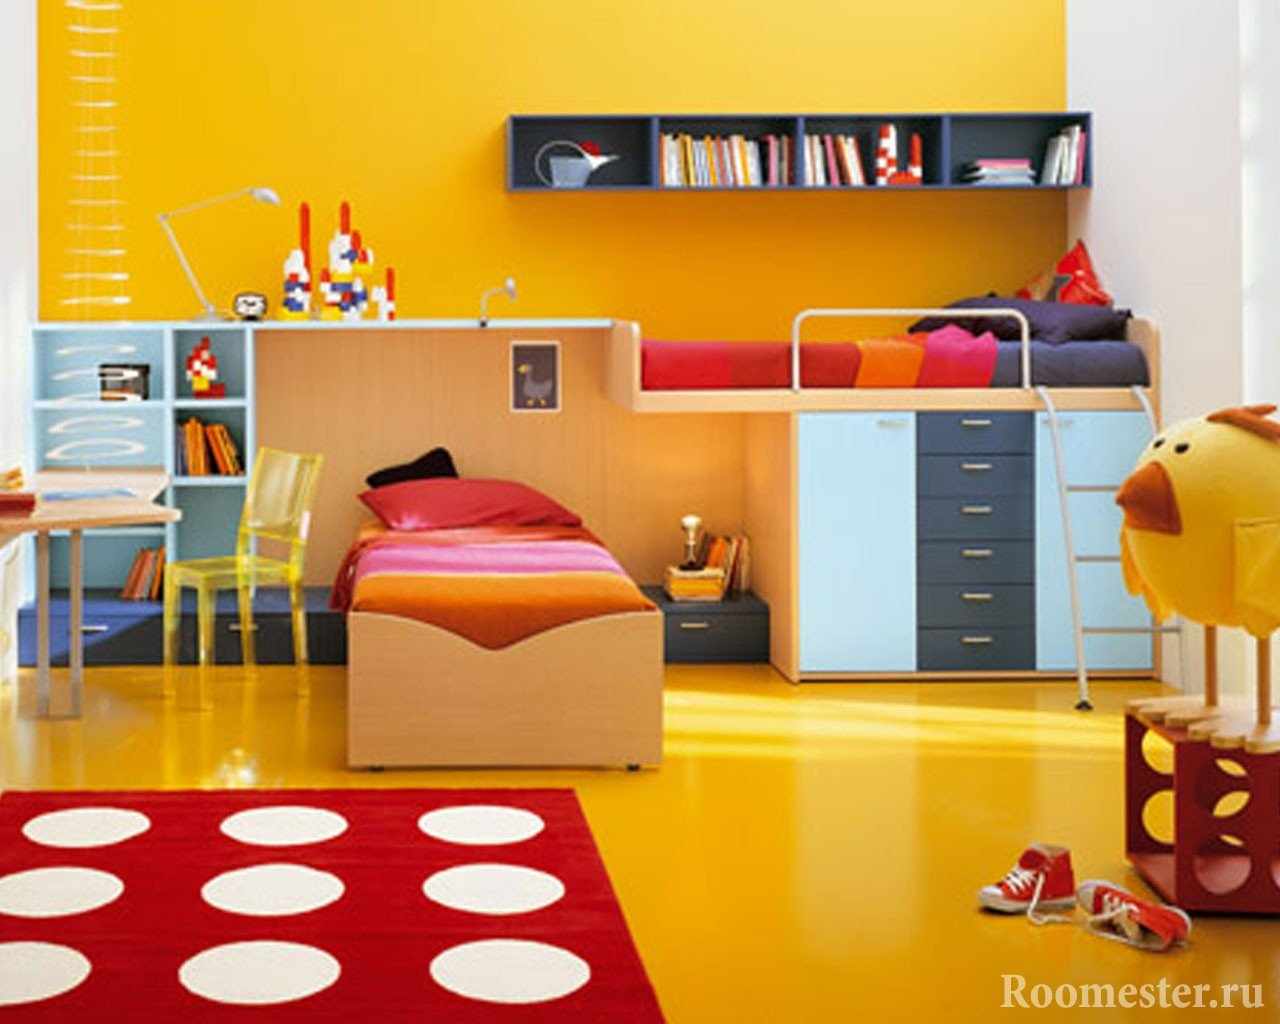 Яркая желтая детская с красными элементами декора